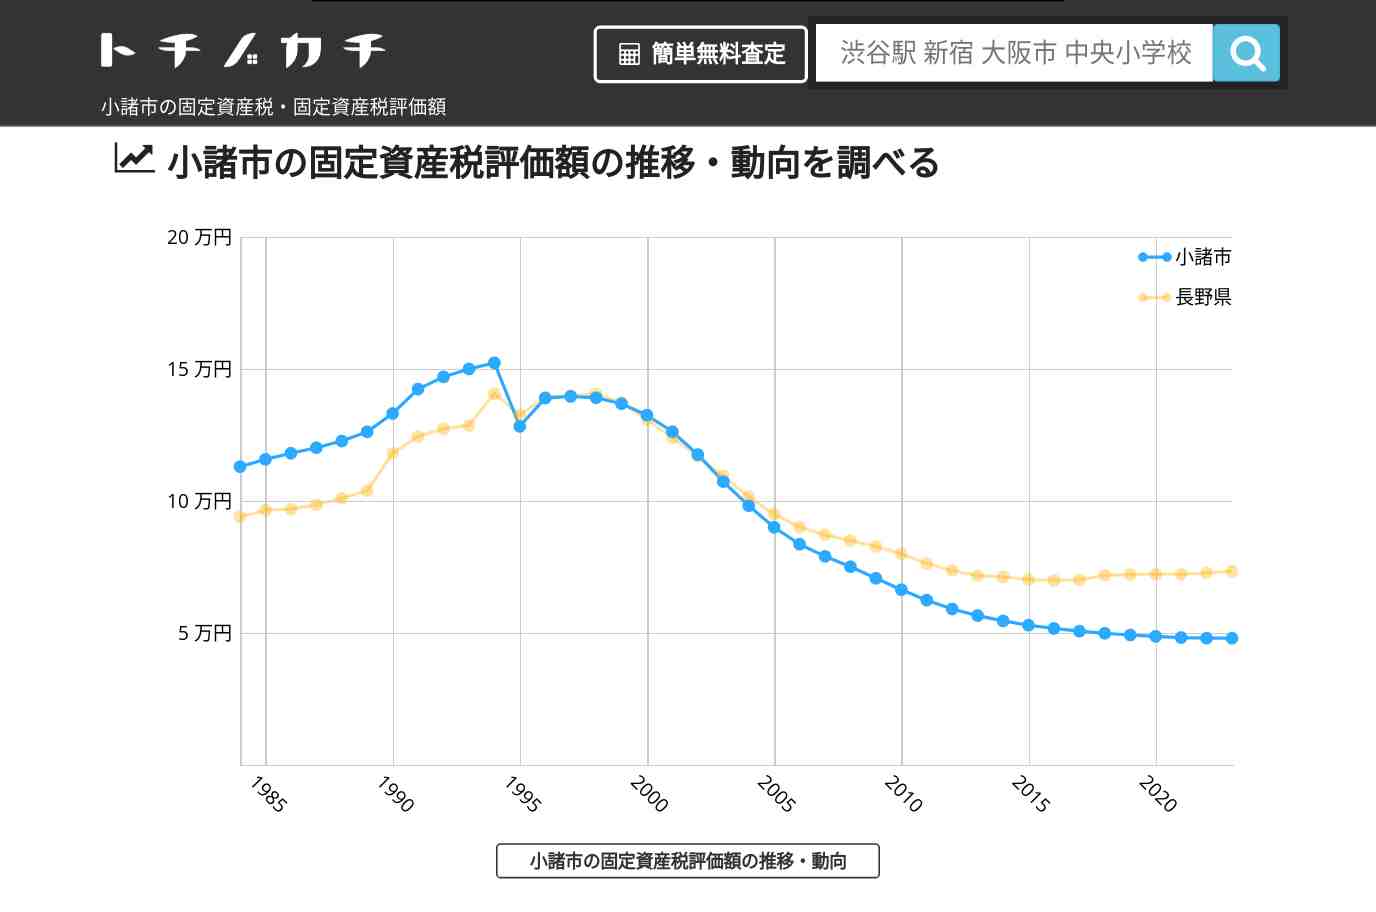 坂の上小学校(長野県 小諸市)周辺の固定資産税・固定資産税評価額 | トチノカチ